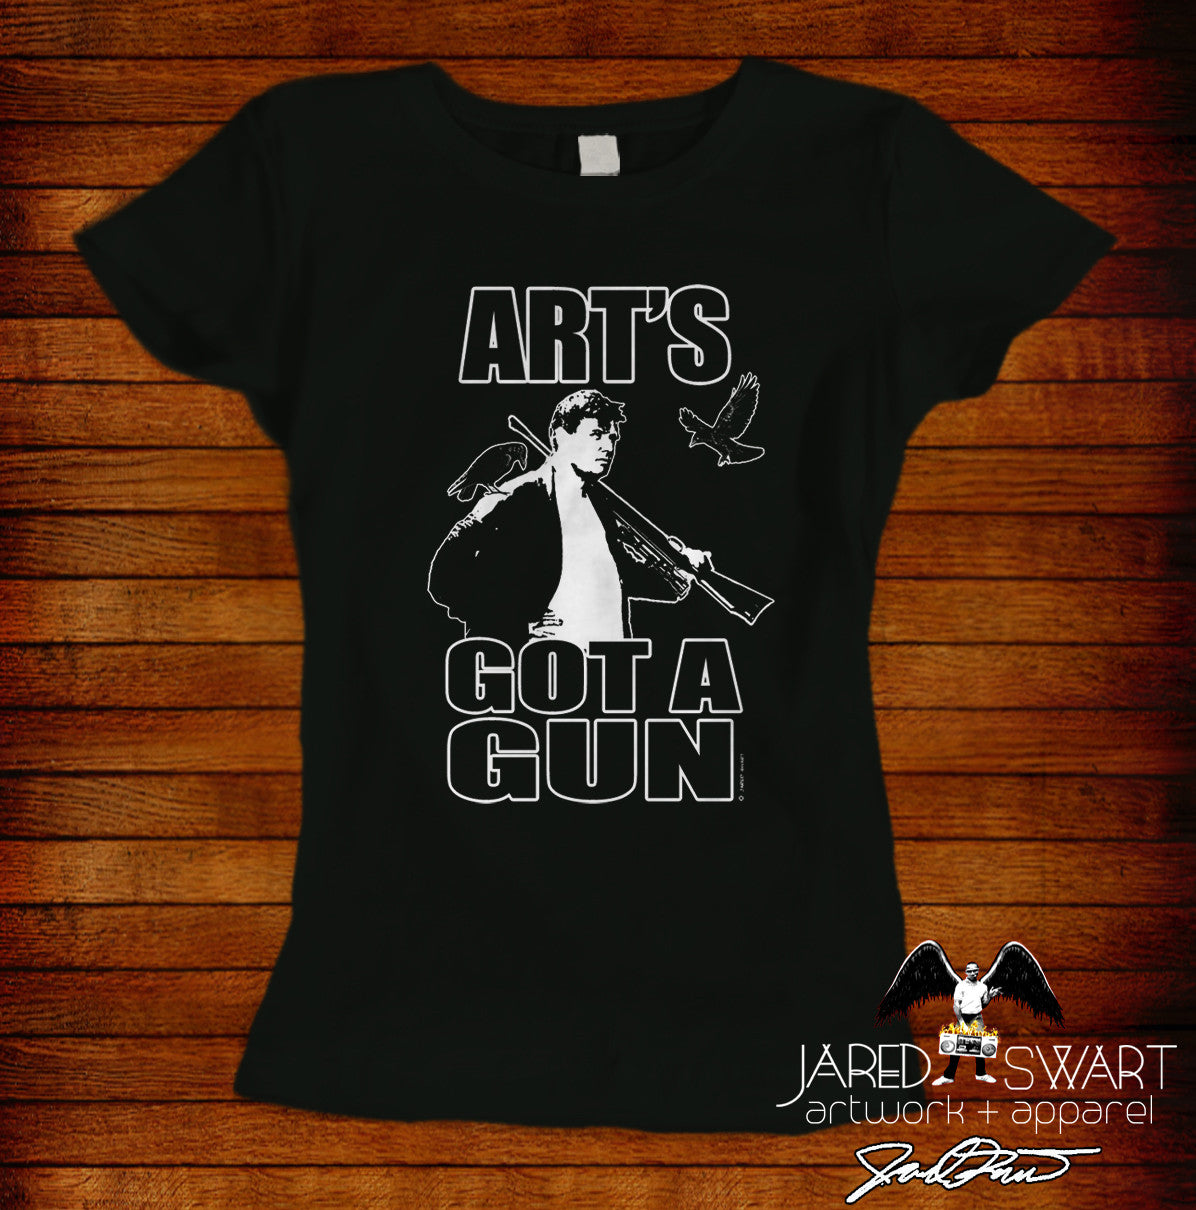 The Burbs "Art's got a gun" tee